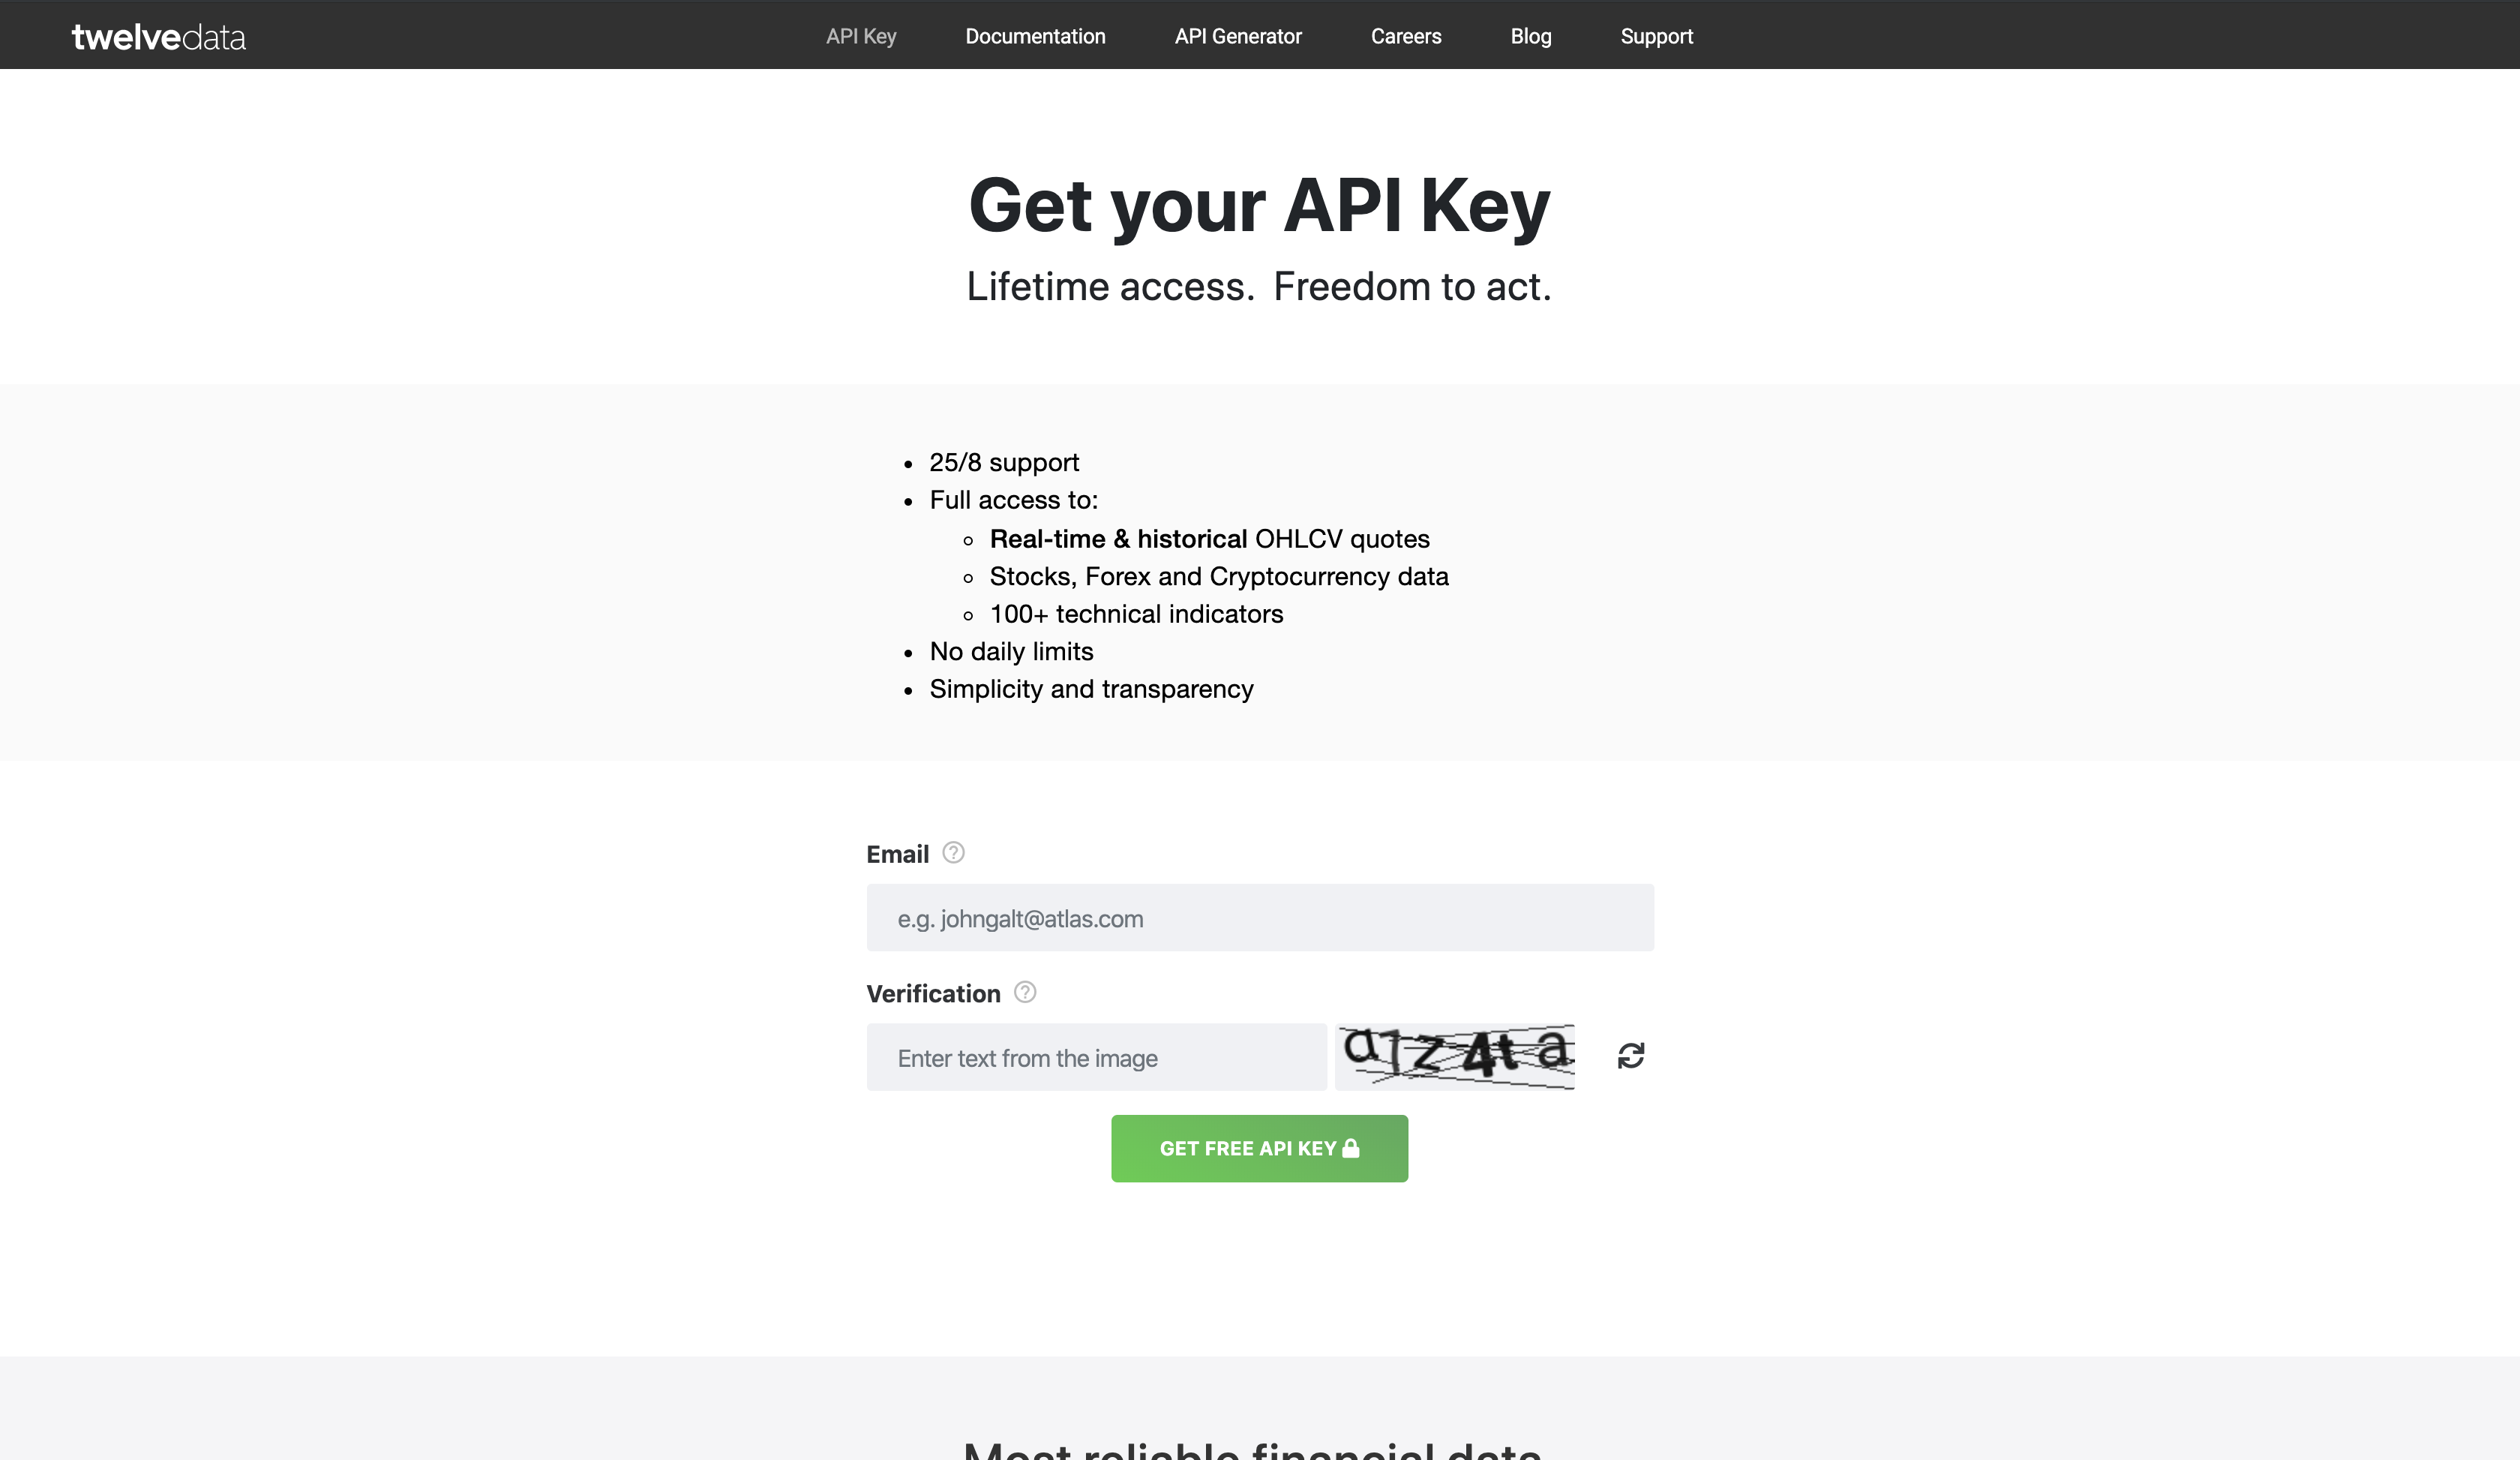 API Key page